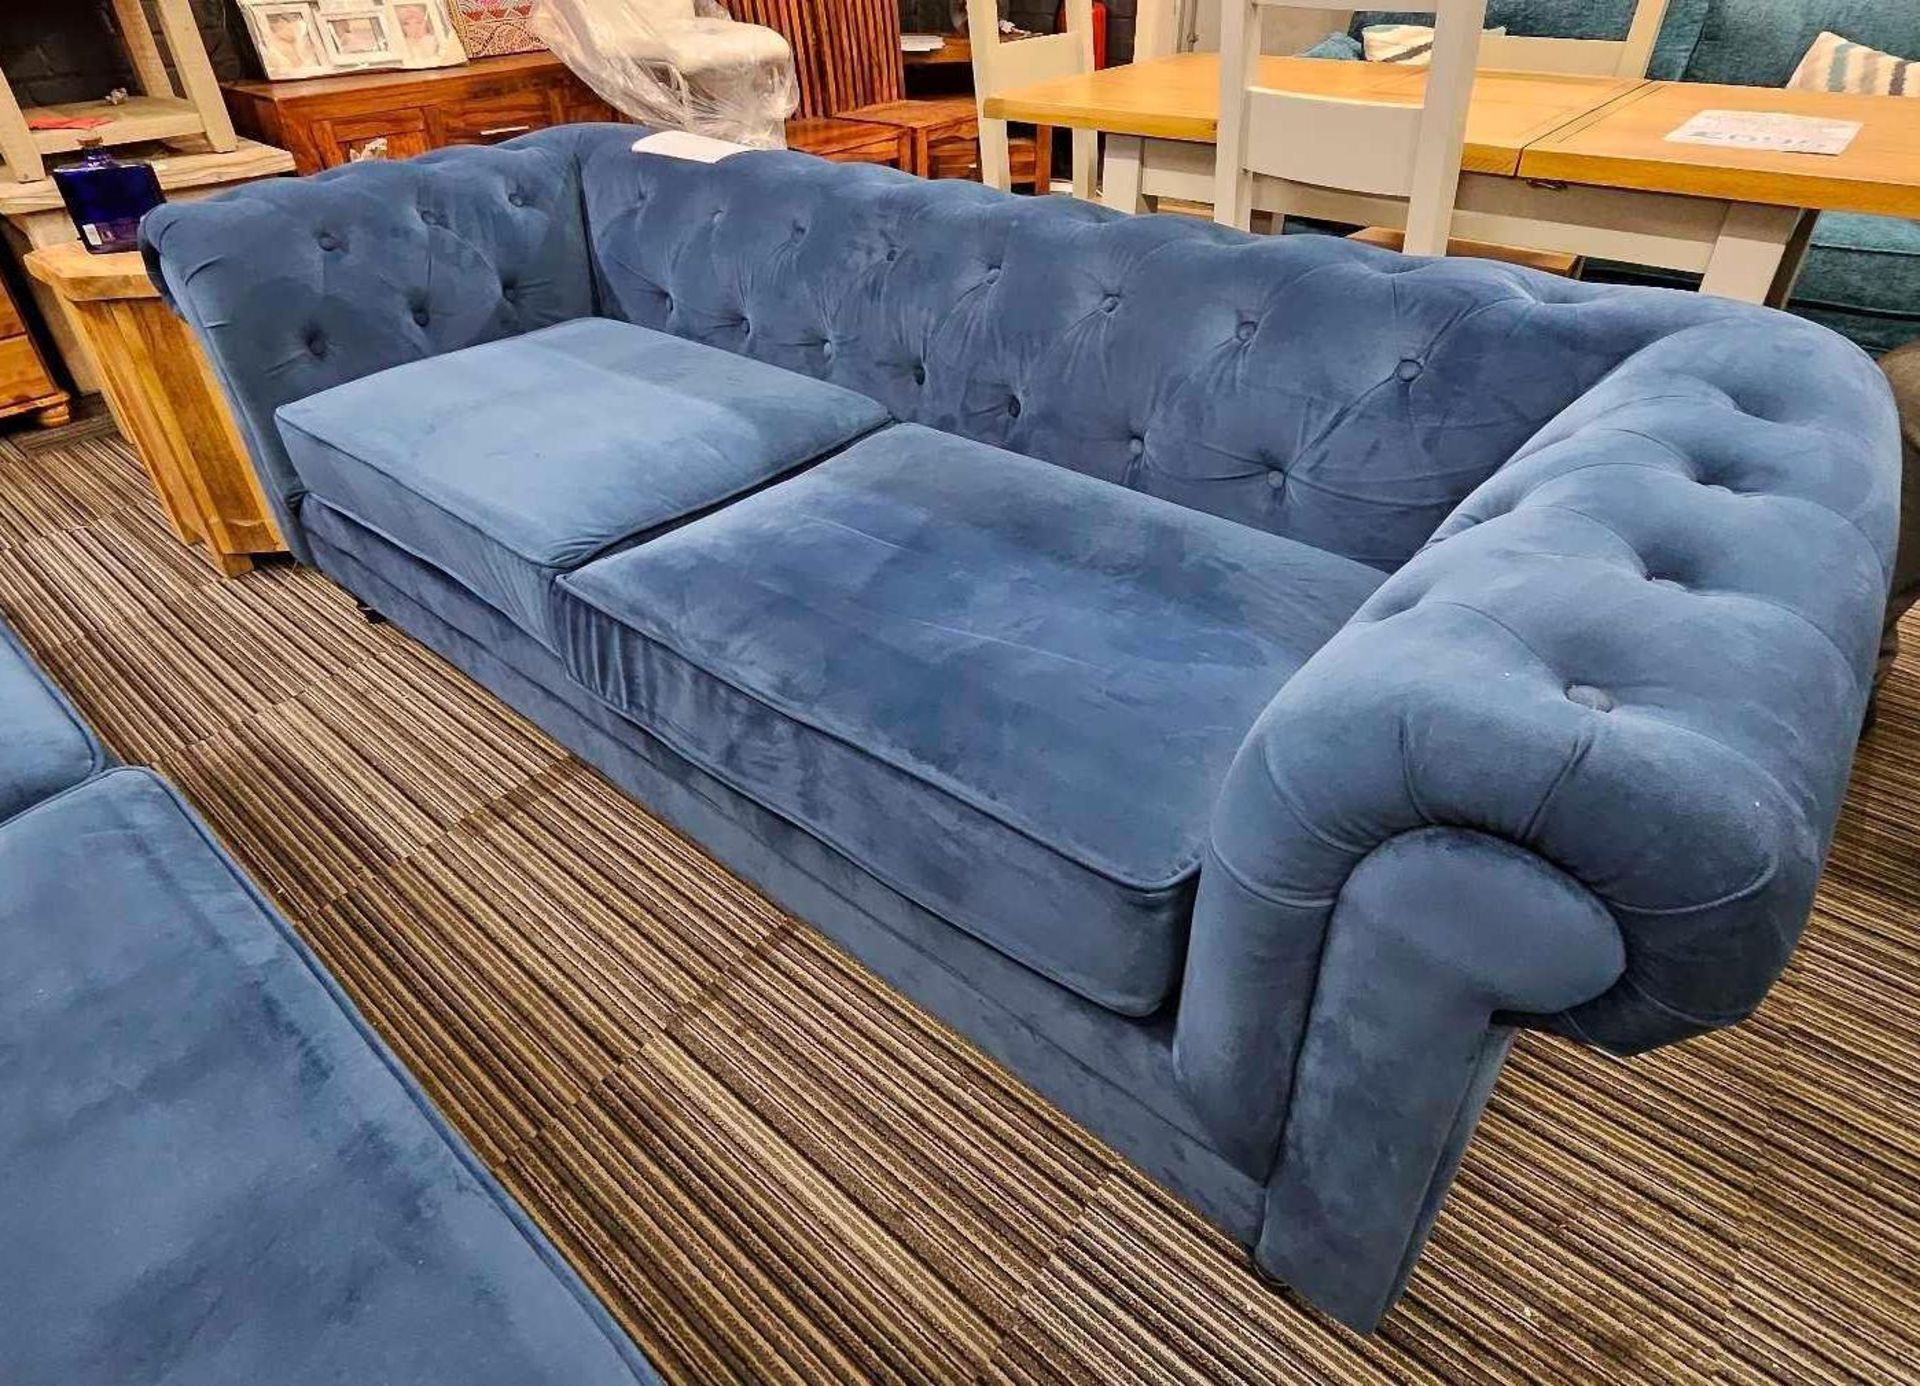 *EX DISPLAY* Pair of 3 seater habitat chesterfield sofas in blue velvet